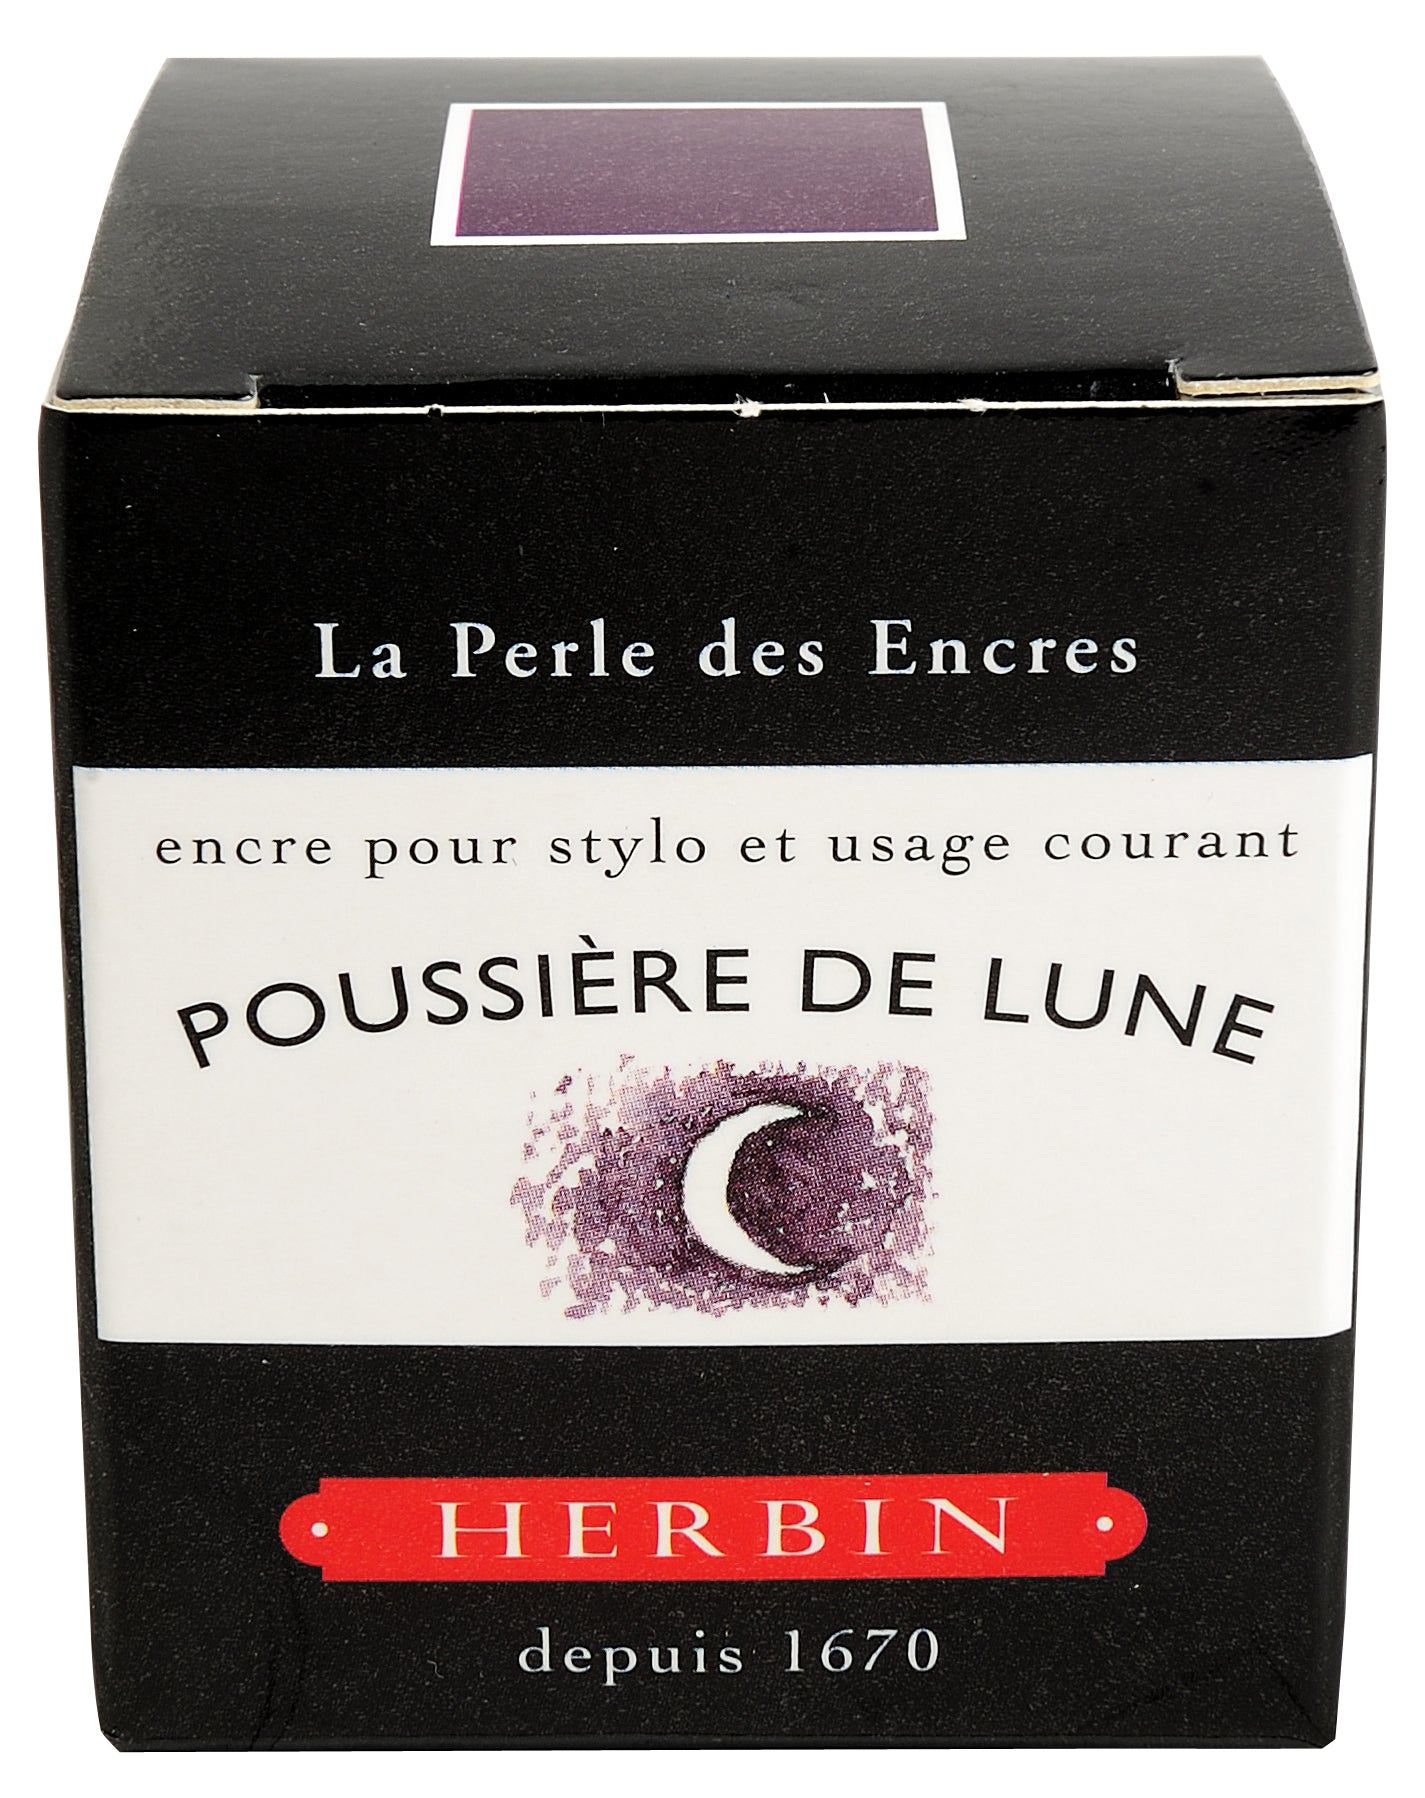 Herbin ink bottle moon dust violet 30 ml / poussiere de lune